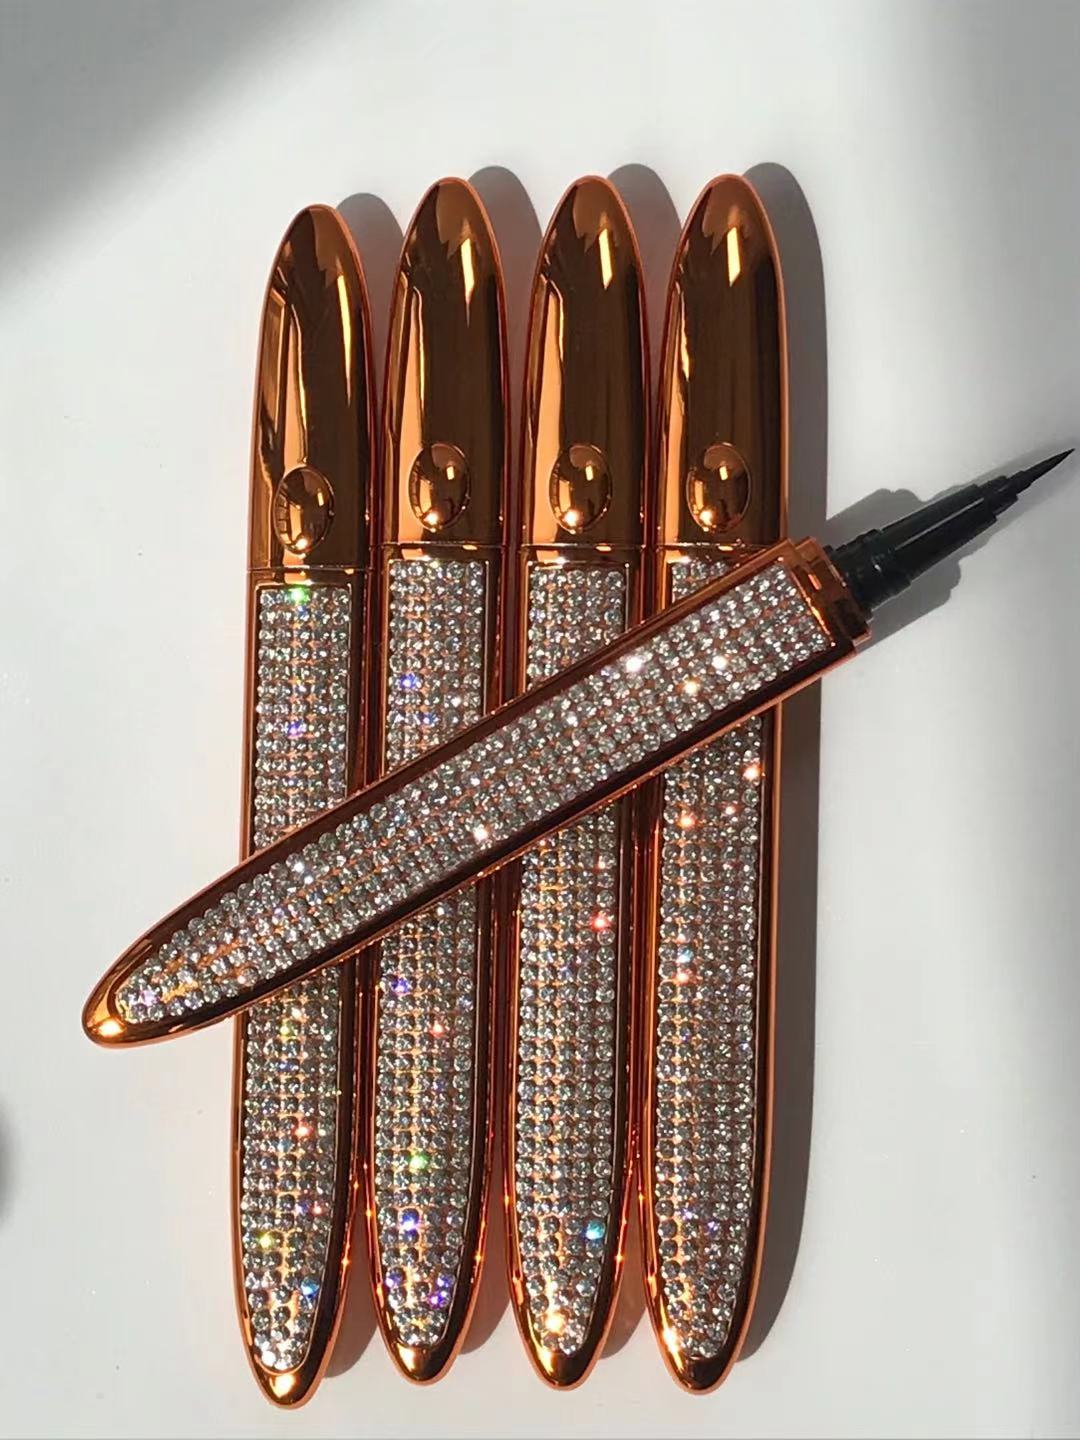 Diamond lash glue pen -Gold and silver